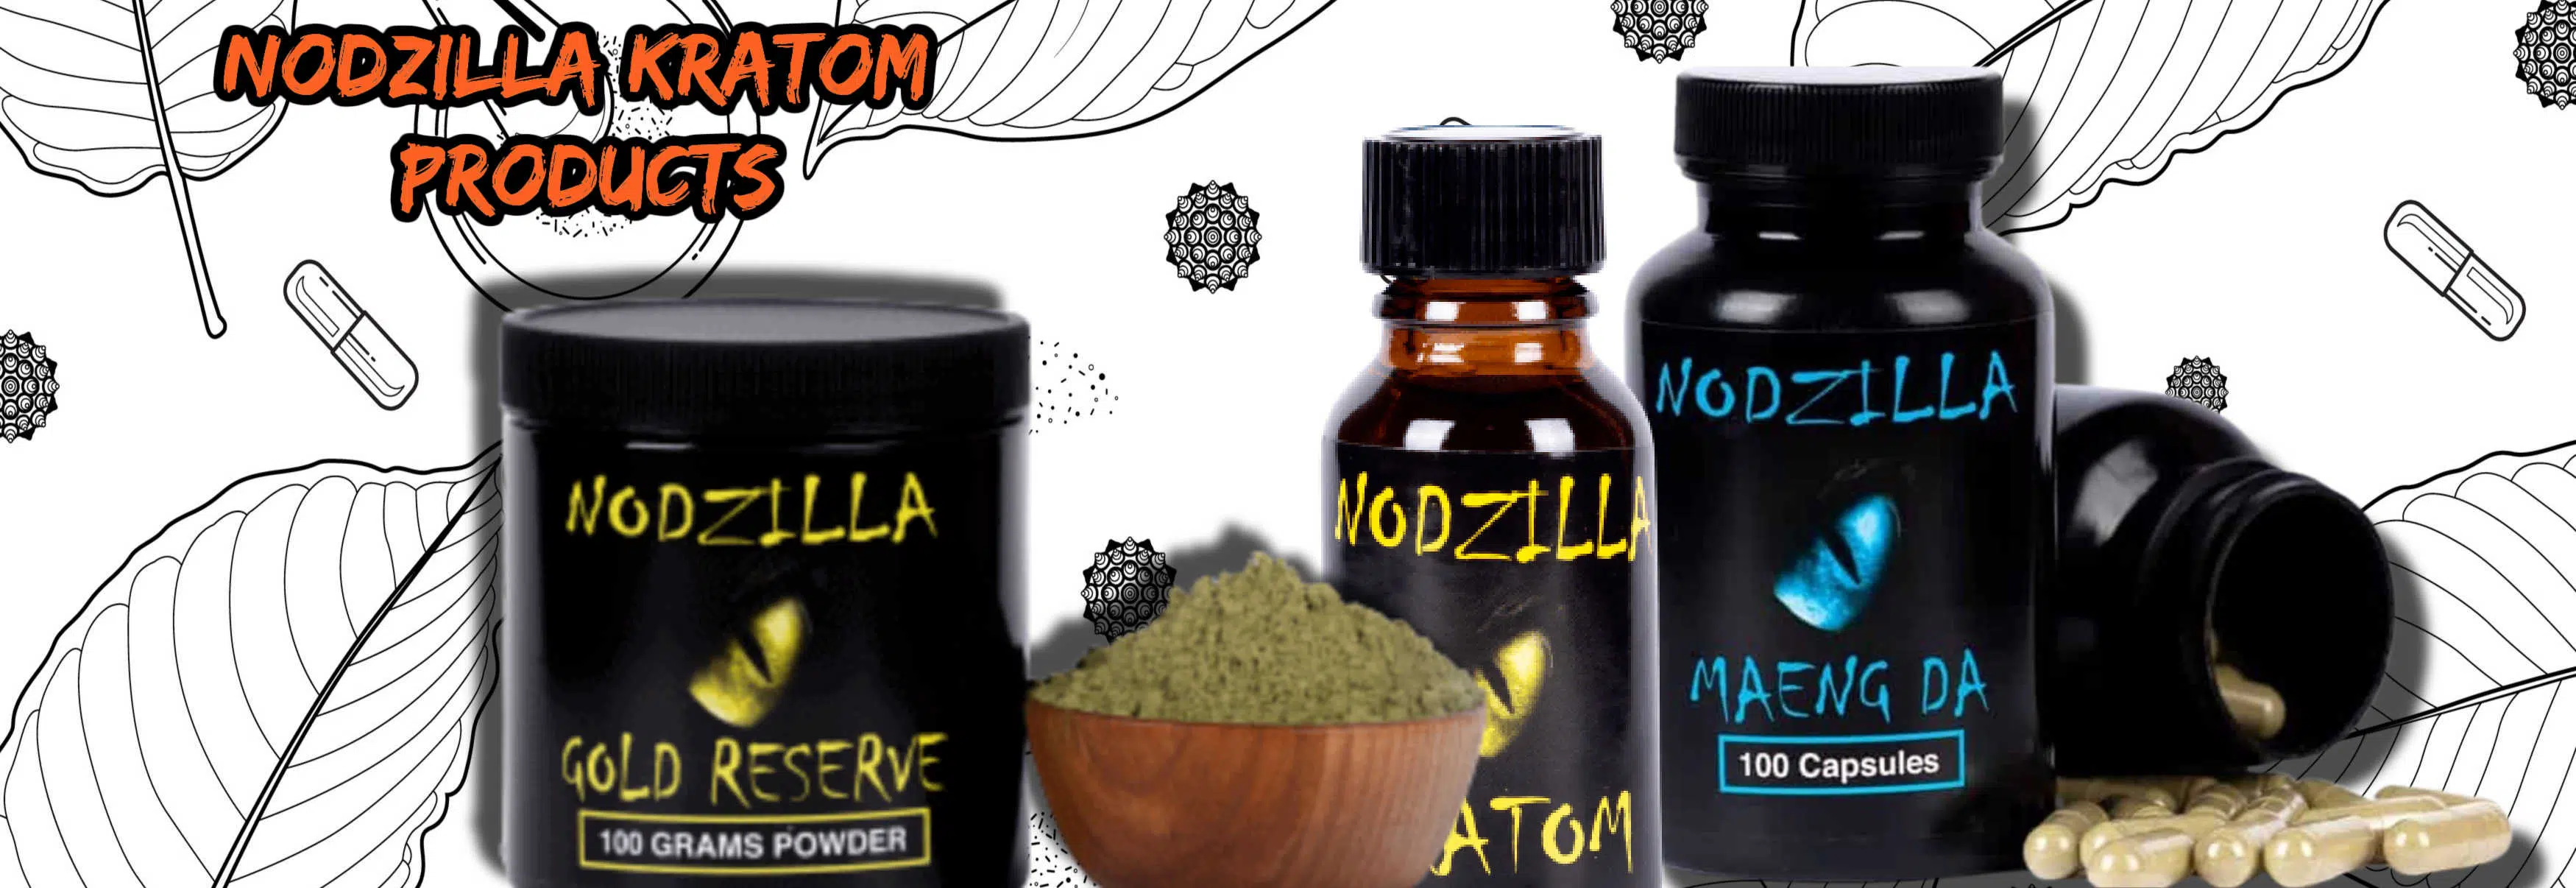 image of nodzilla kratom products